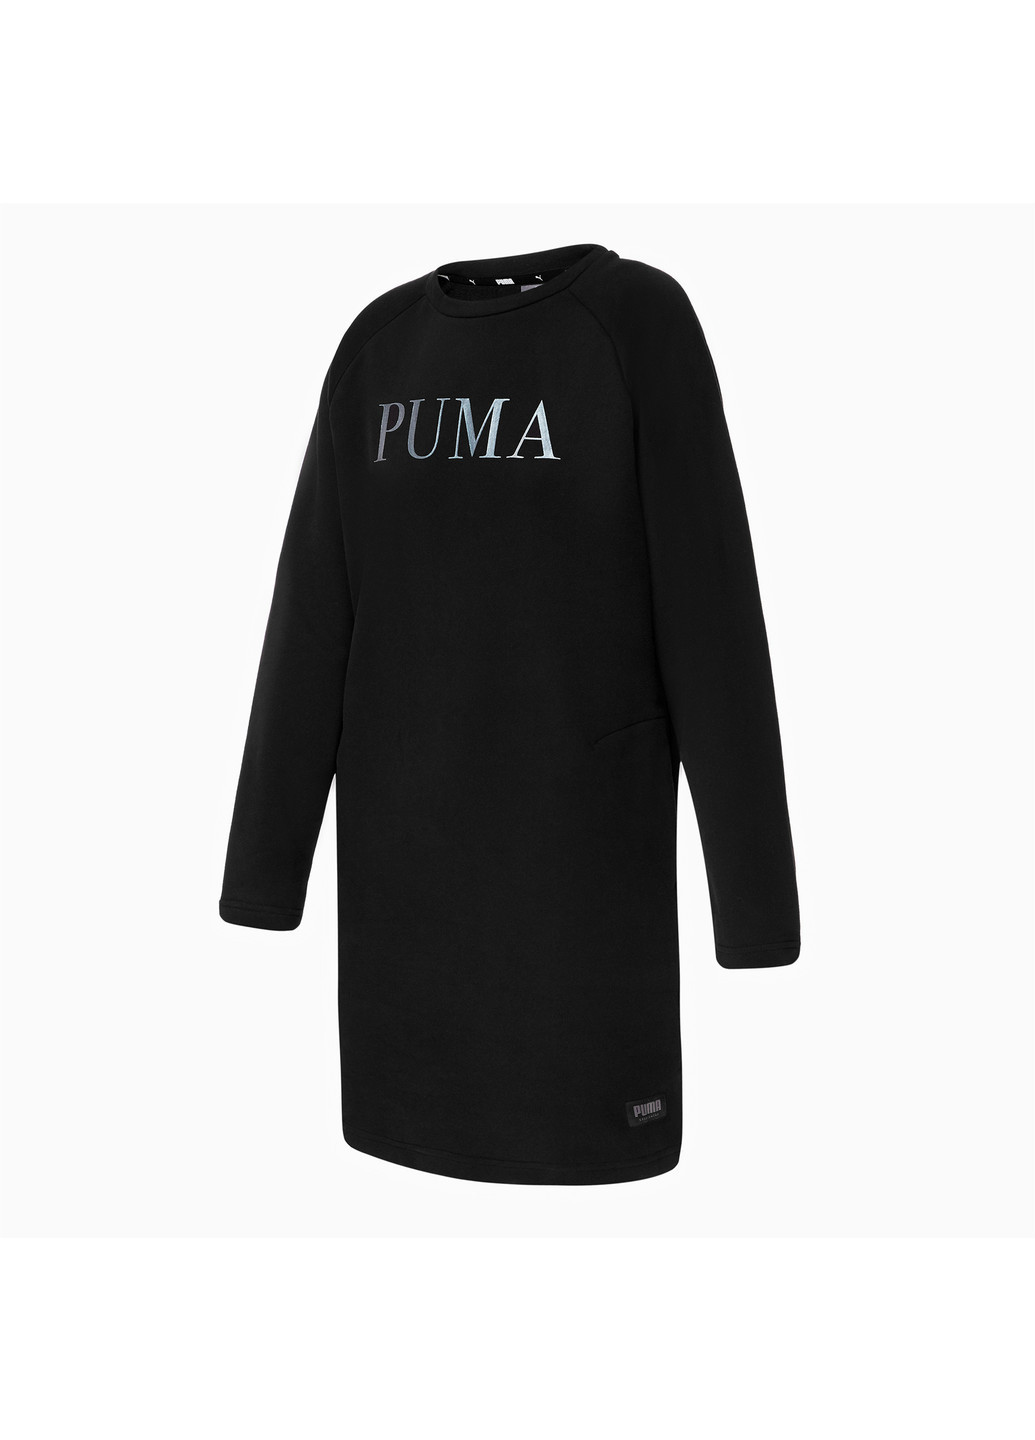 Черное спортивное платье athletics dress fl Puma однотонное